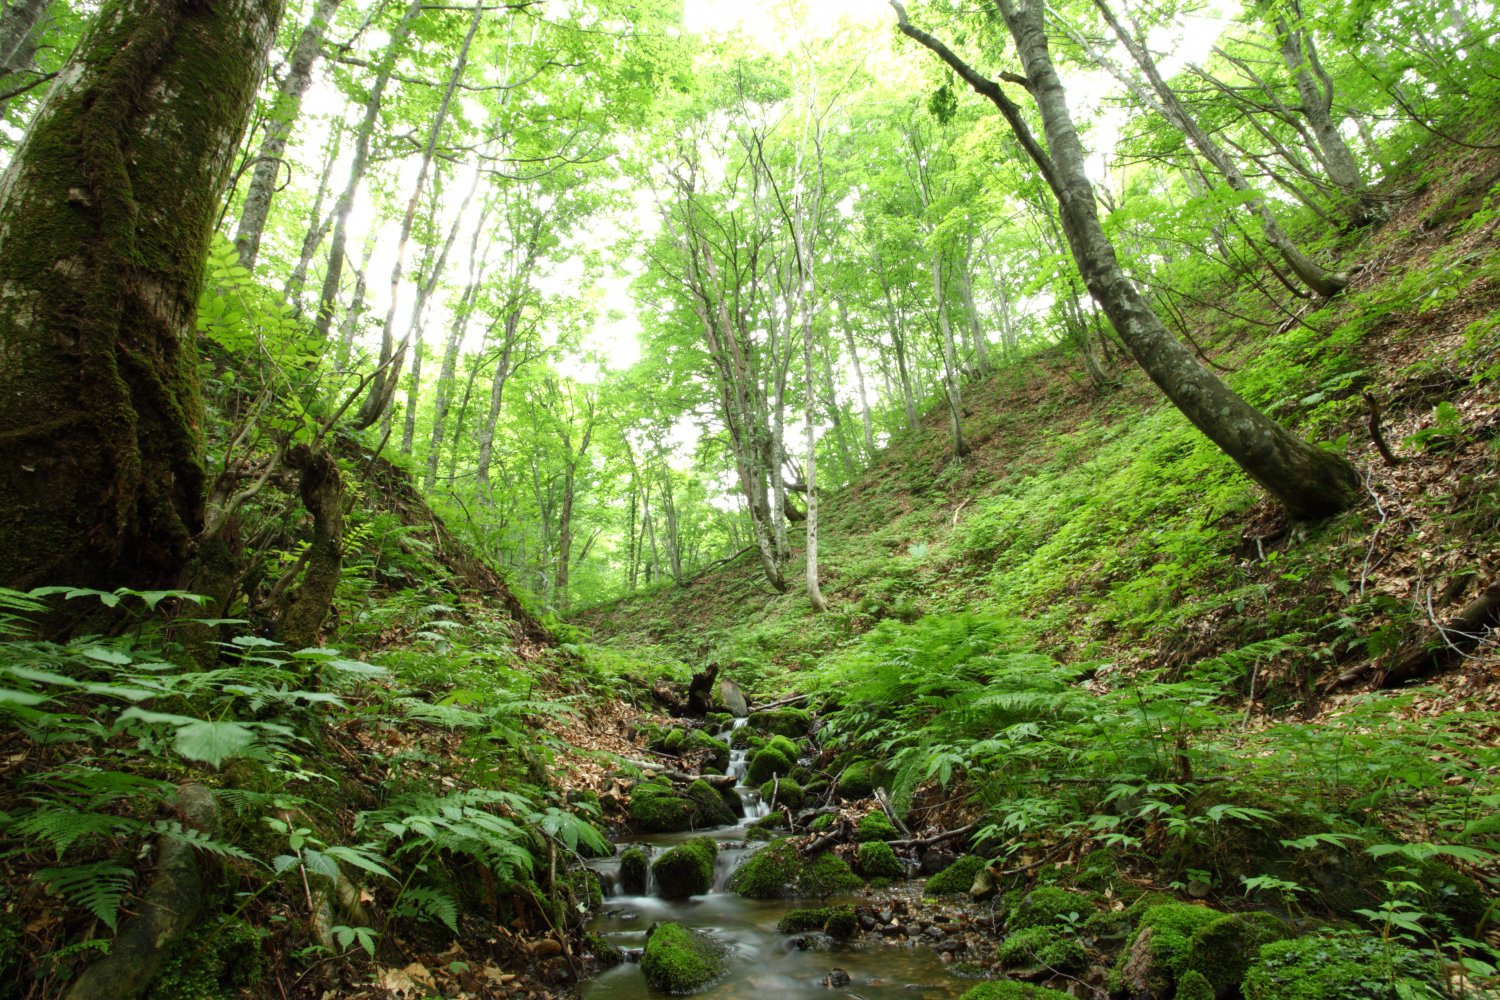 ブナ林は1993年に、屋久島とともに日本で最初の世界自然遺産に登録された。